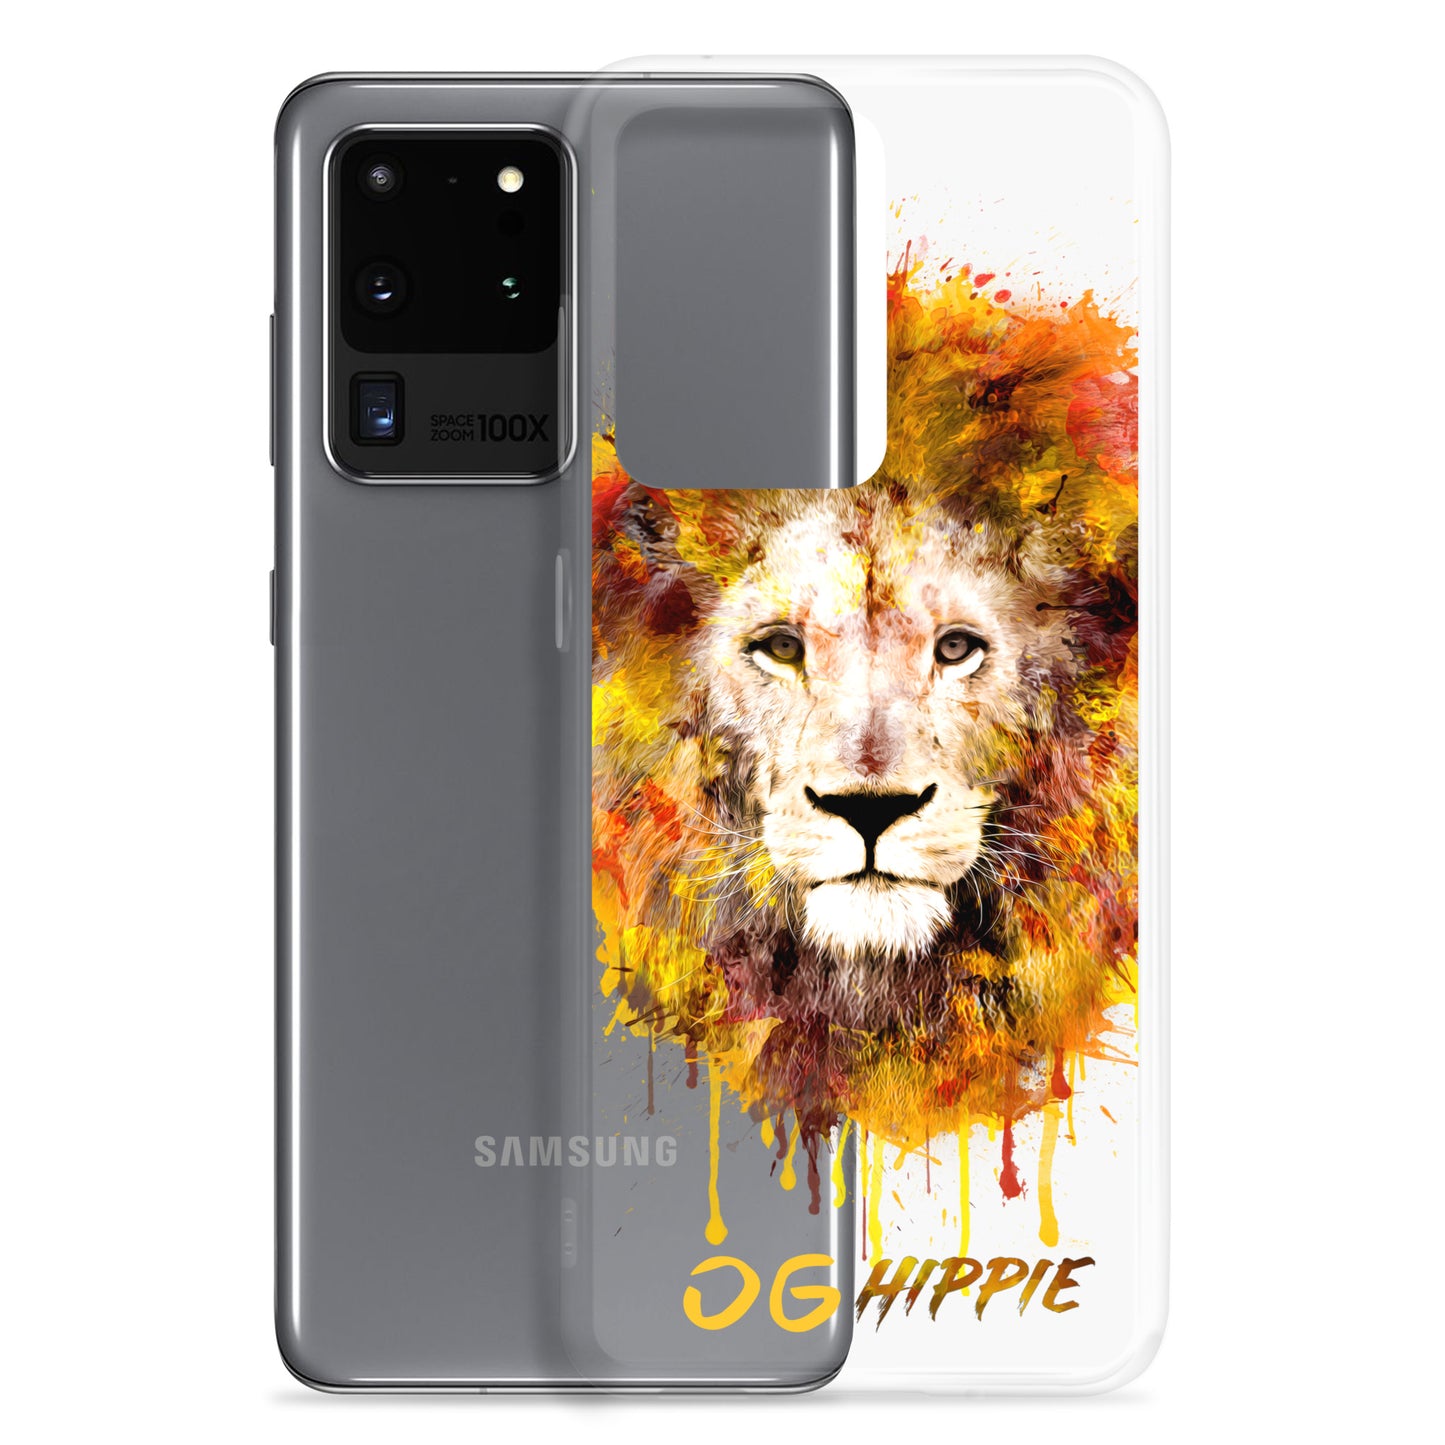 Coque Samsung transparente - OG Hippie (jaune)